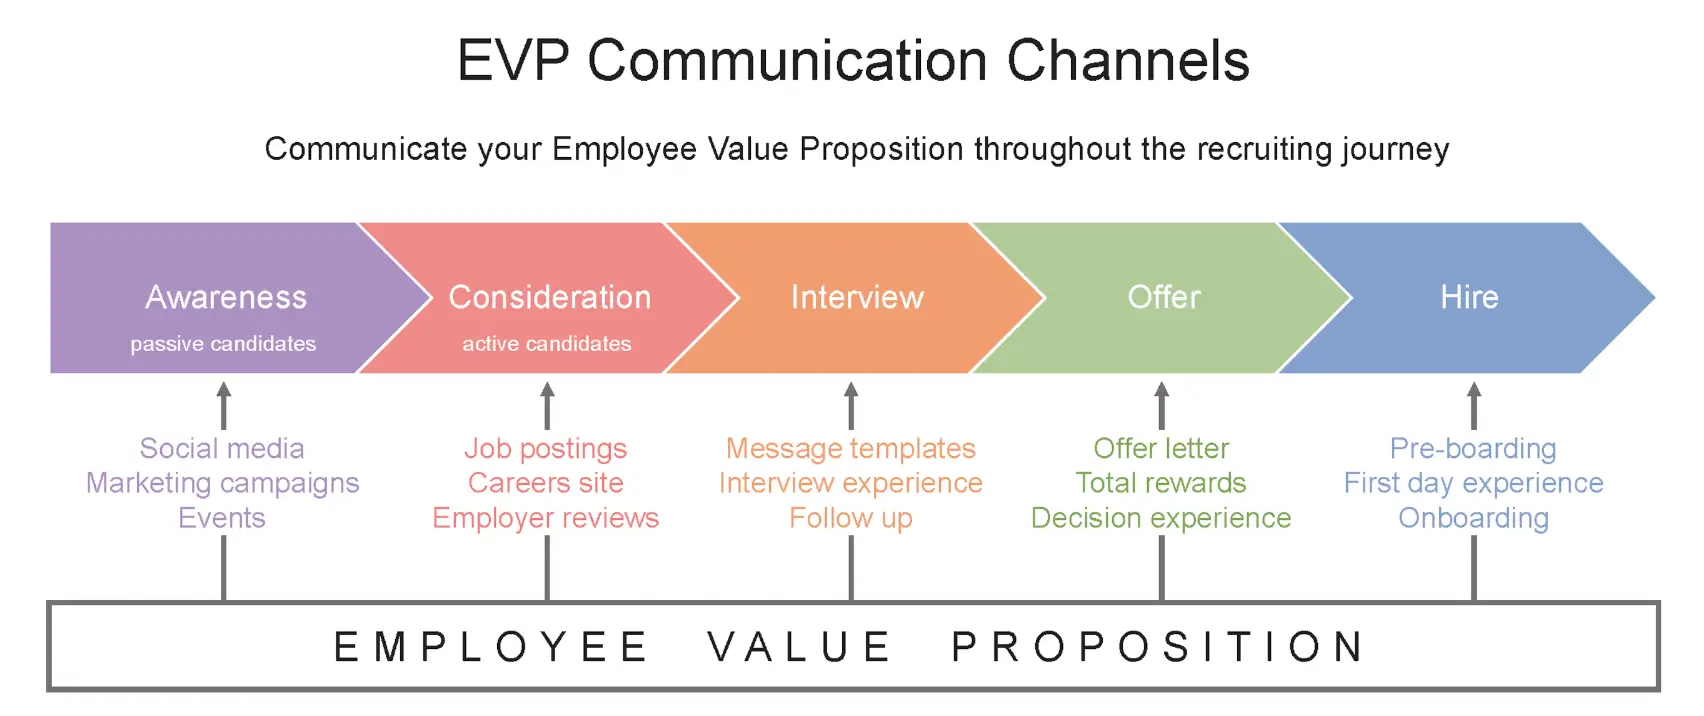 EVP communication channels infographic